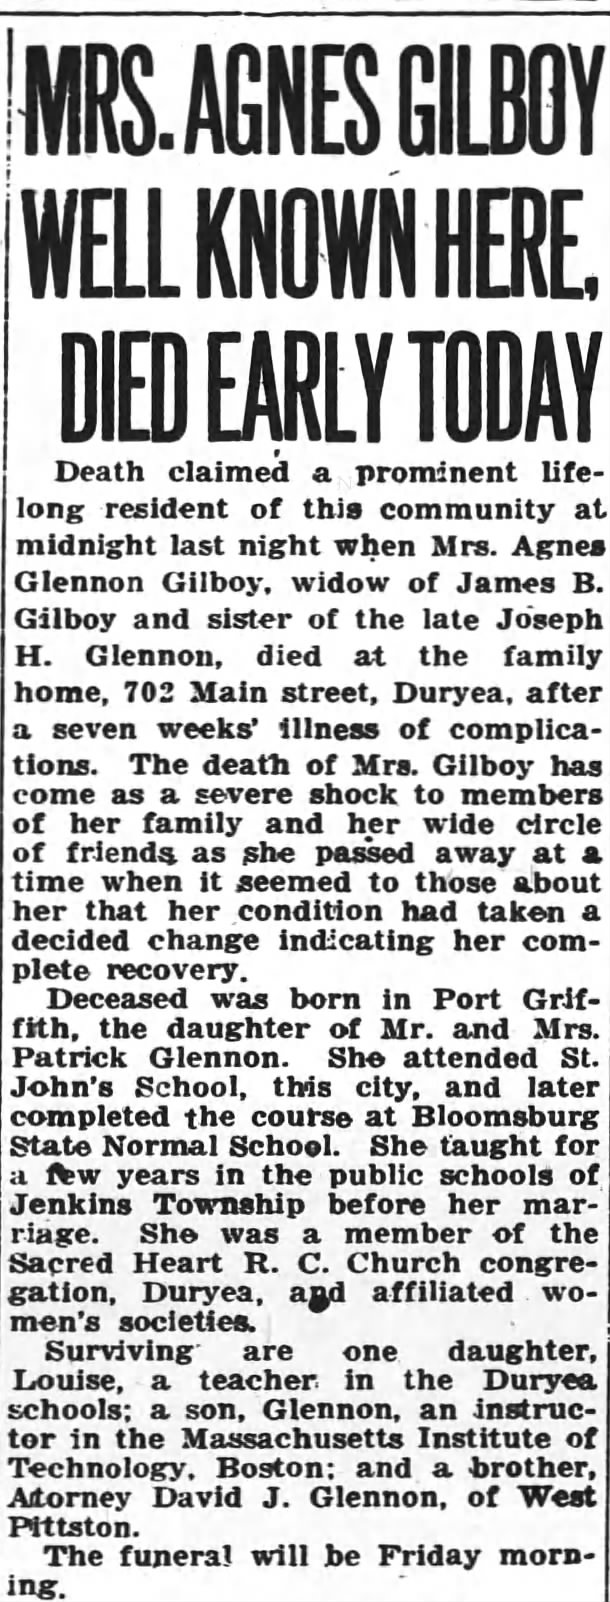 Agness Glennon Gilboy obituary